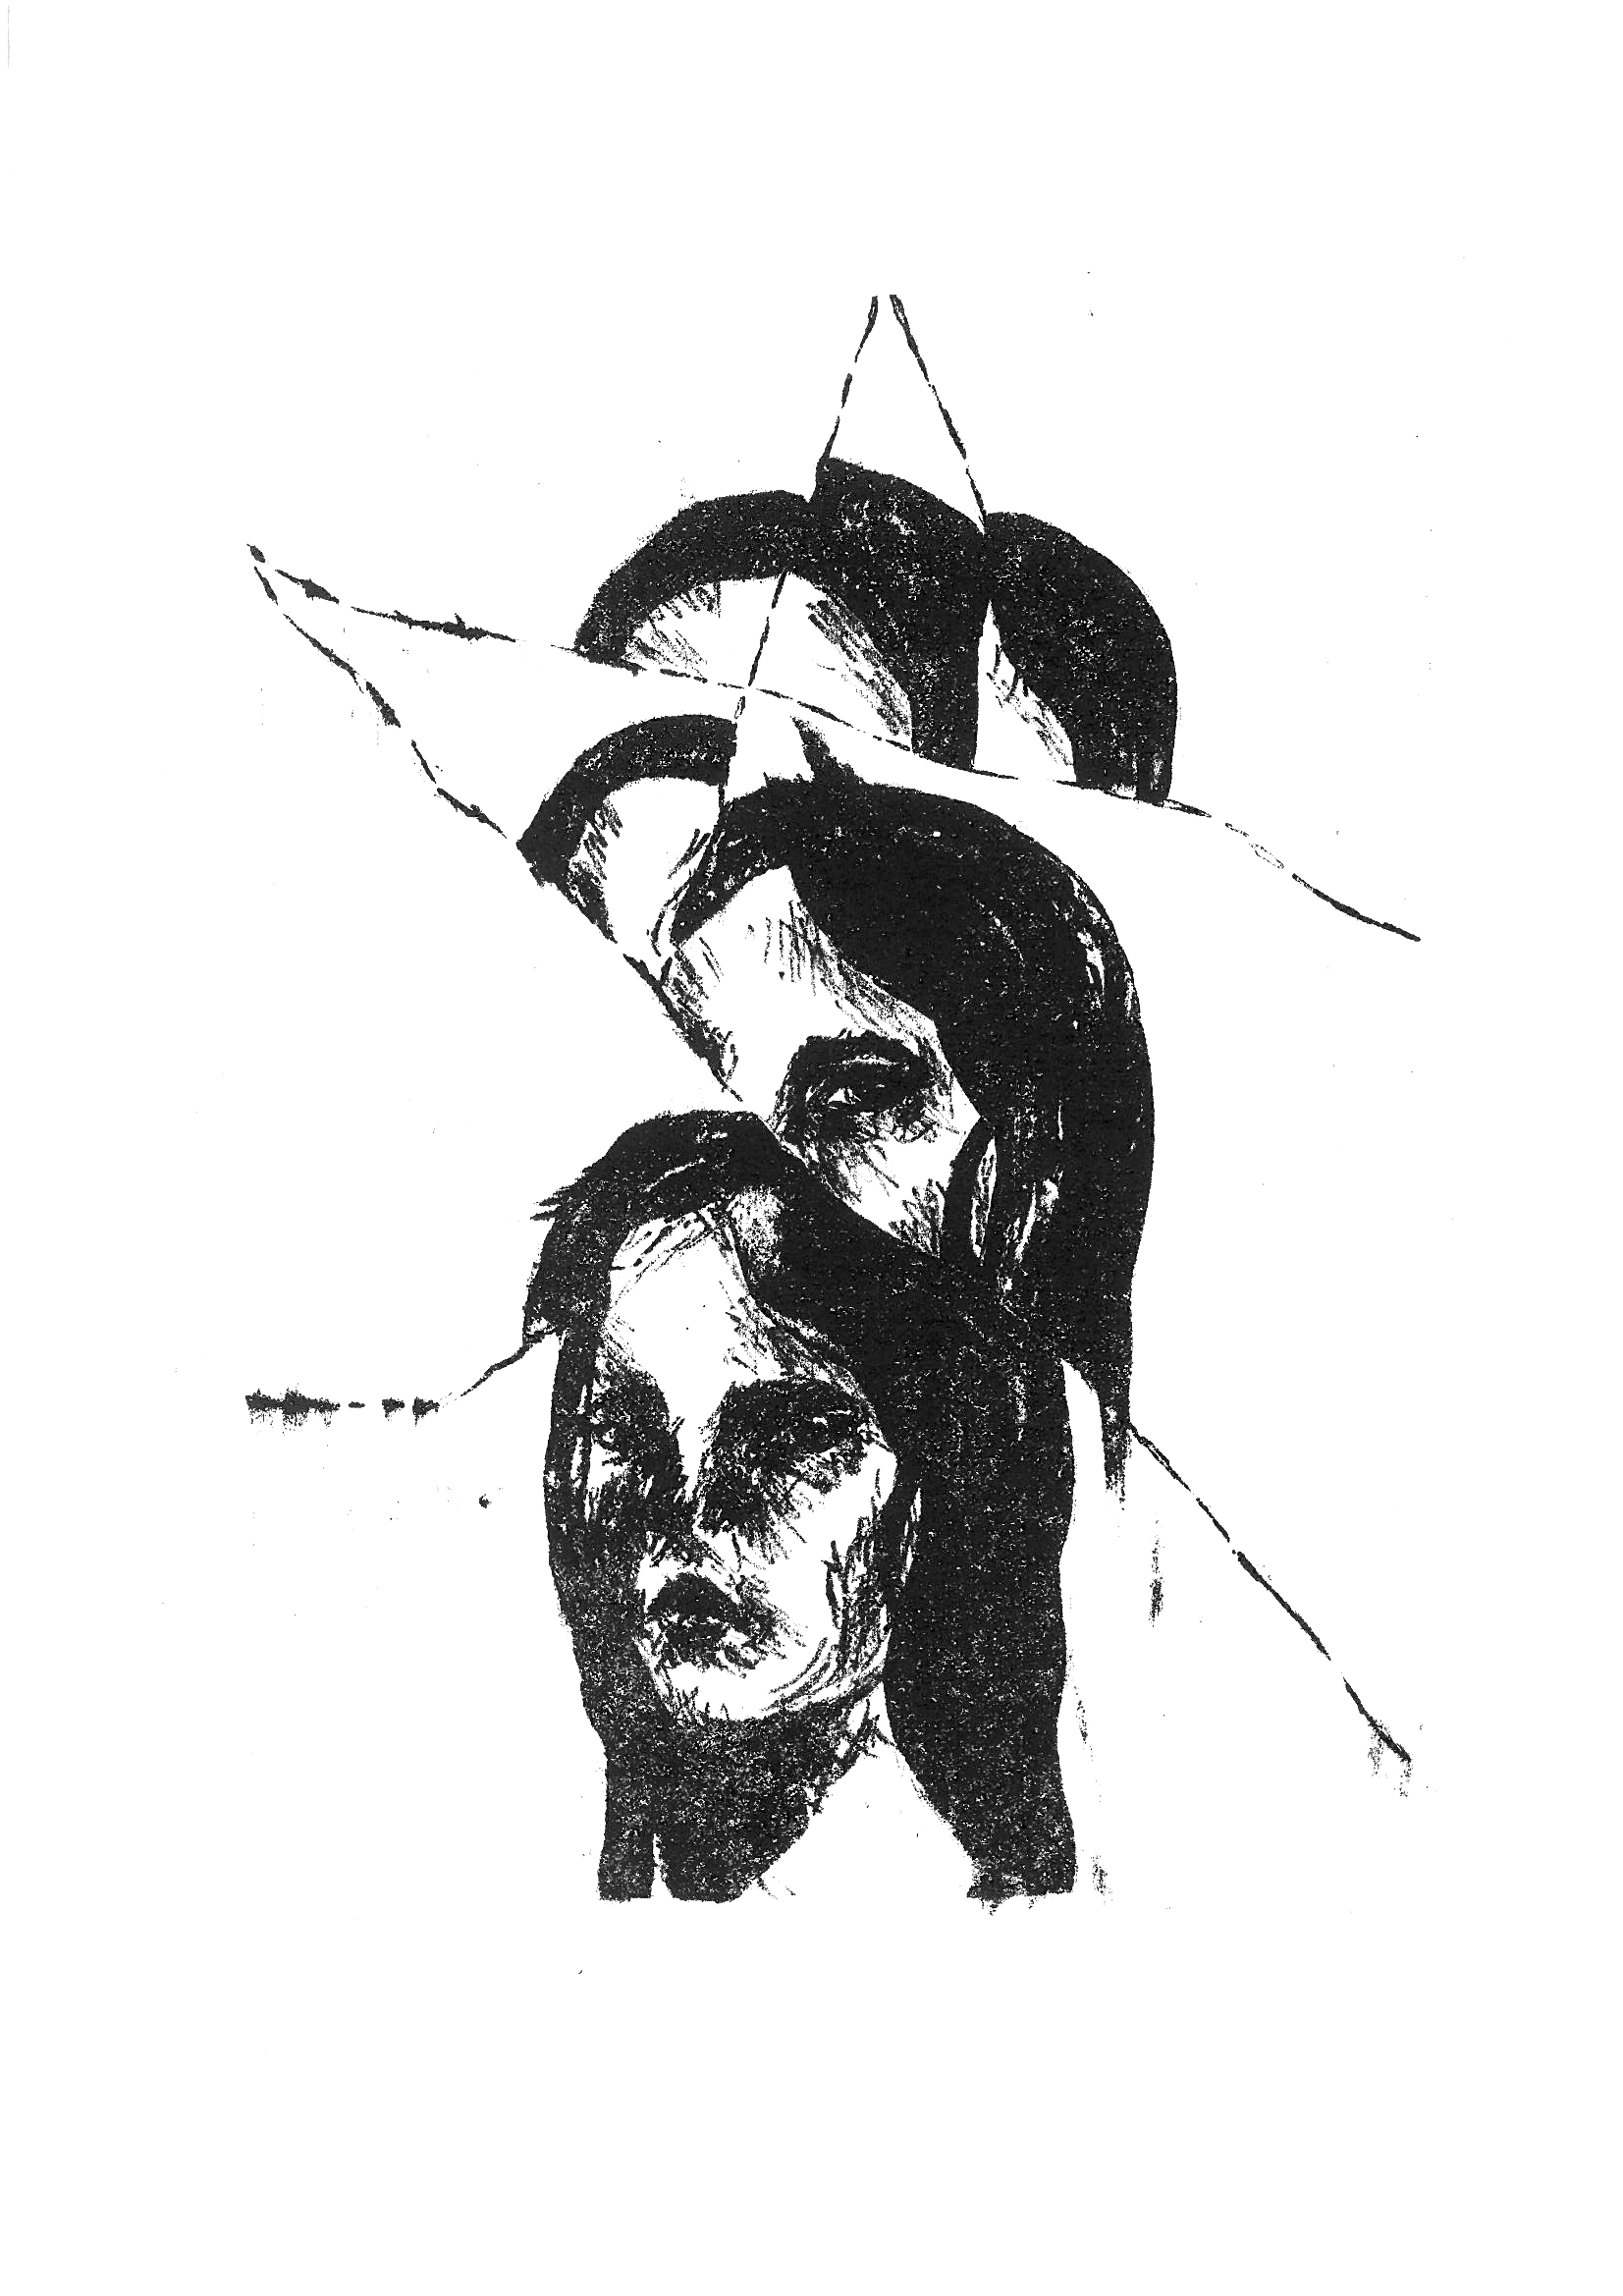 Grafika przedstawia portret, głowę podzieloną fragmentami na parę częśc